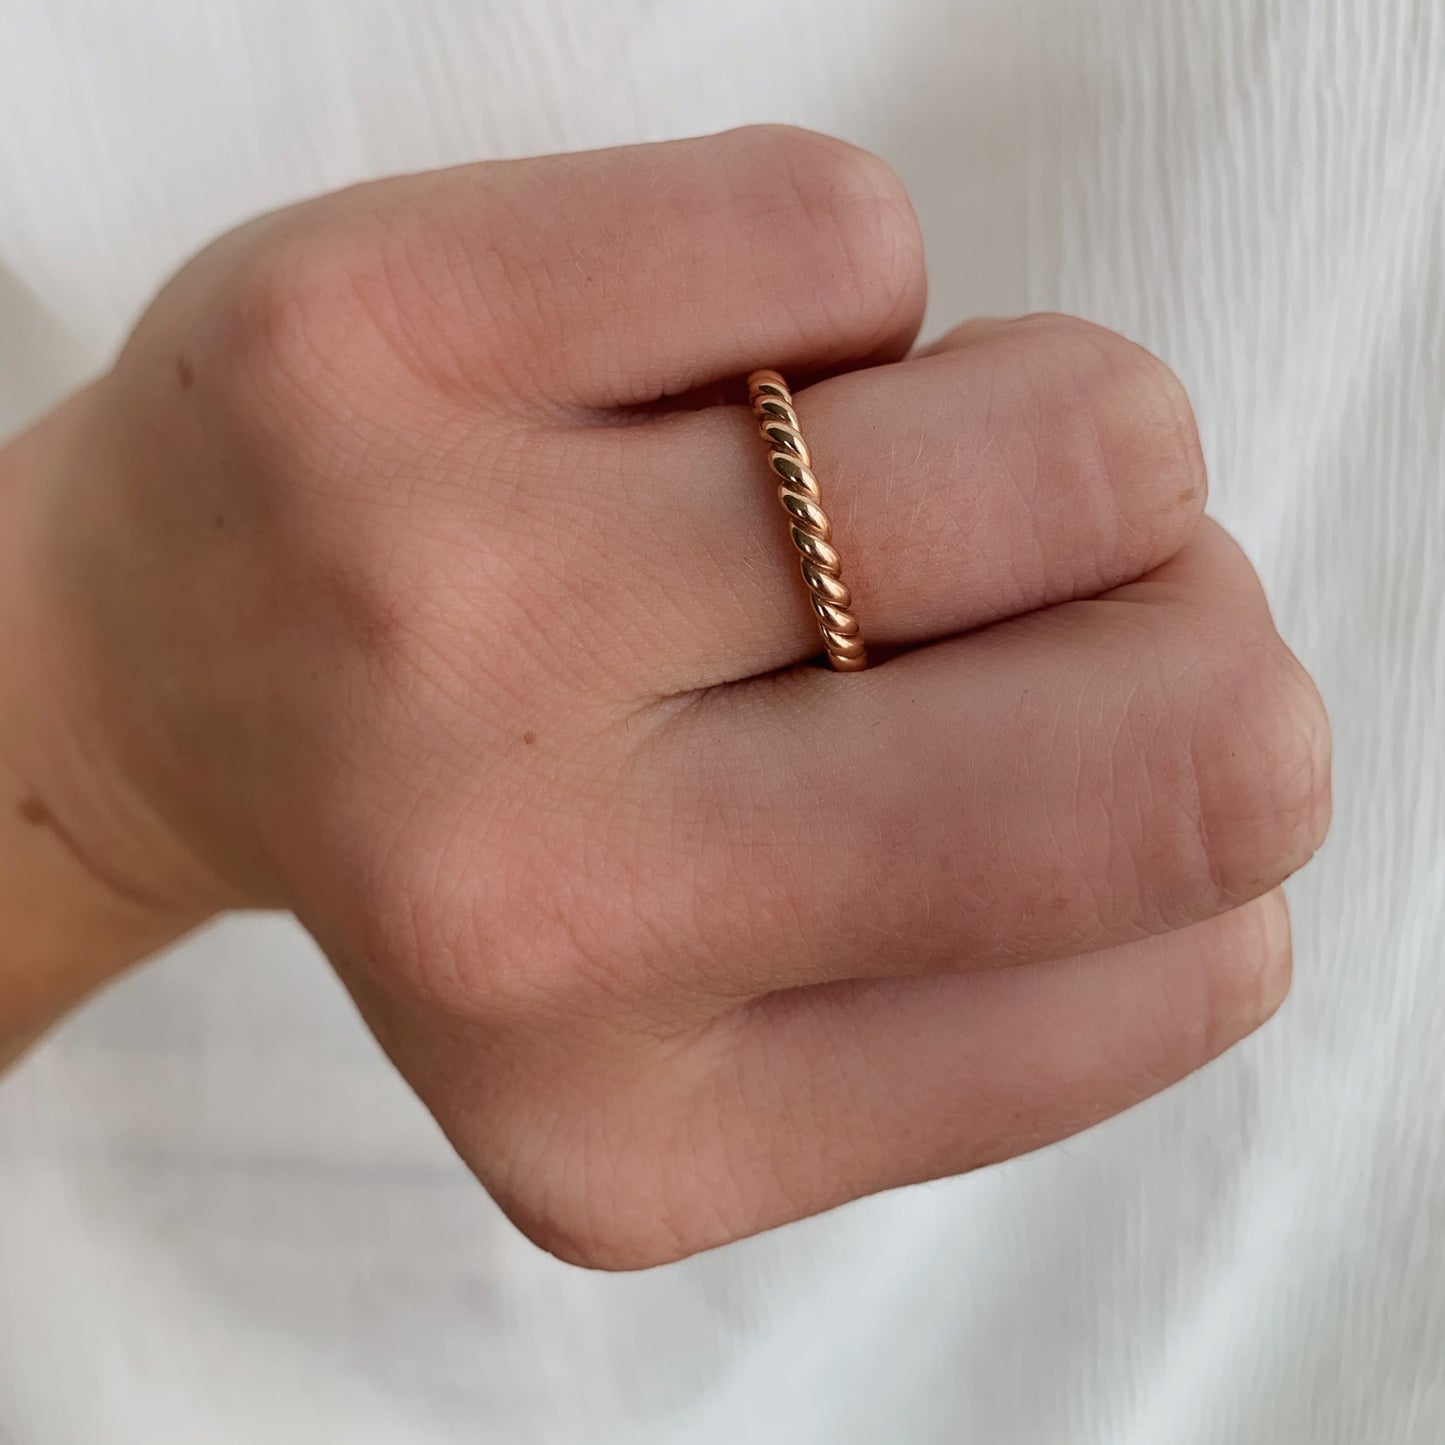 Vintage 18k Rose Gold Twisted Ring Size 5